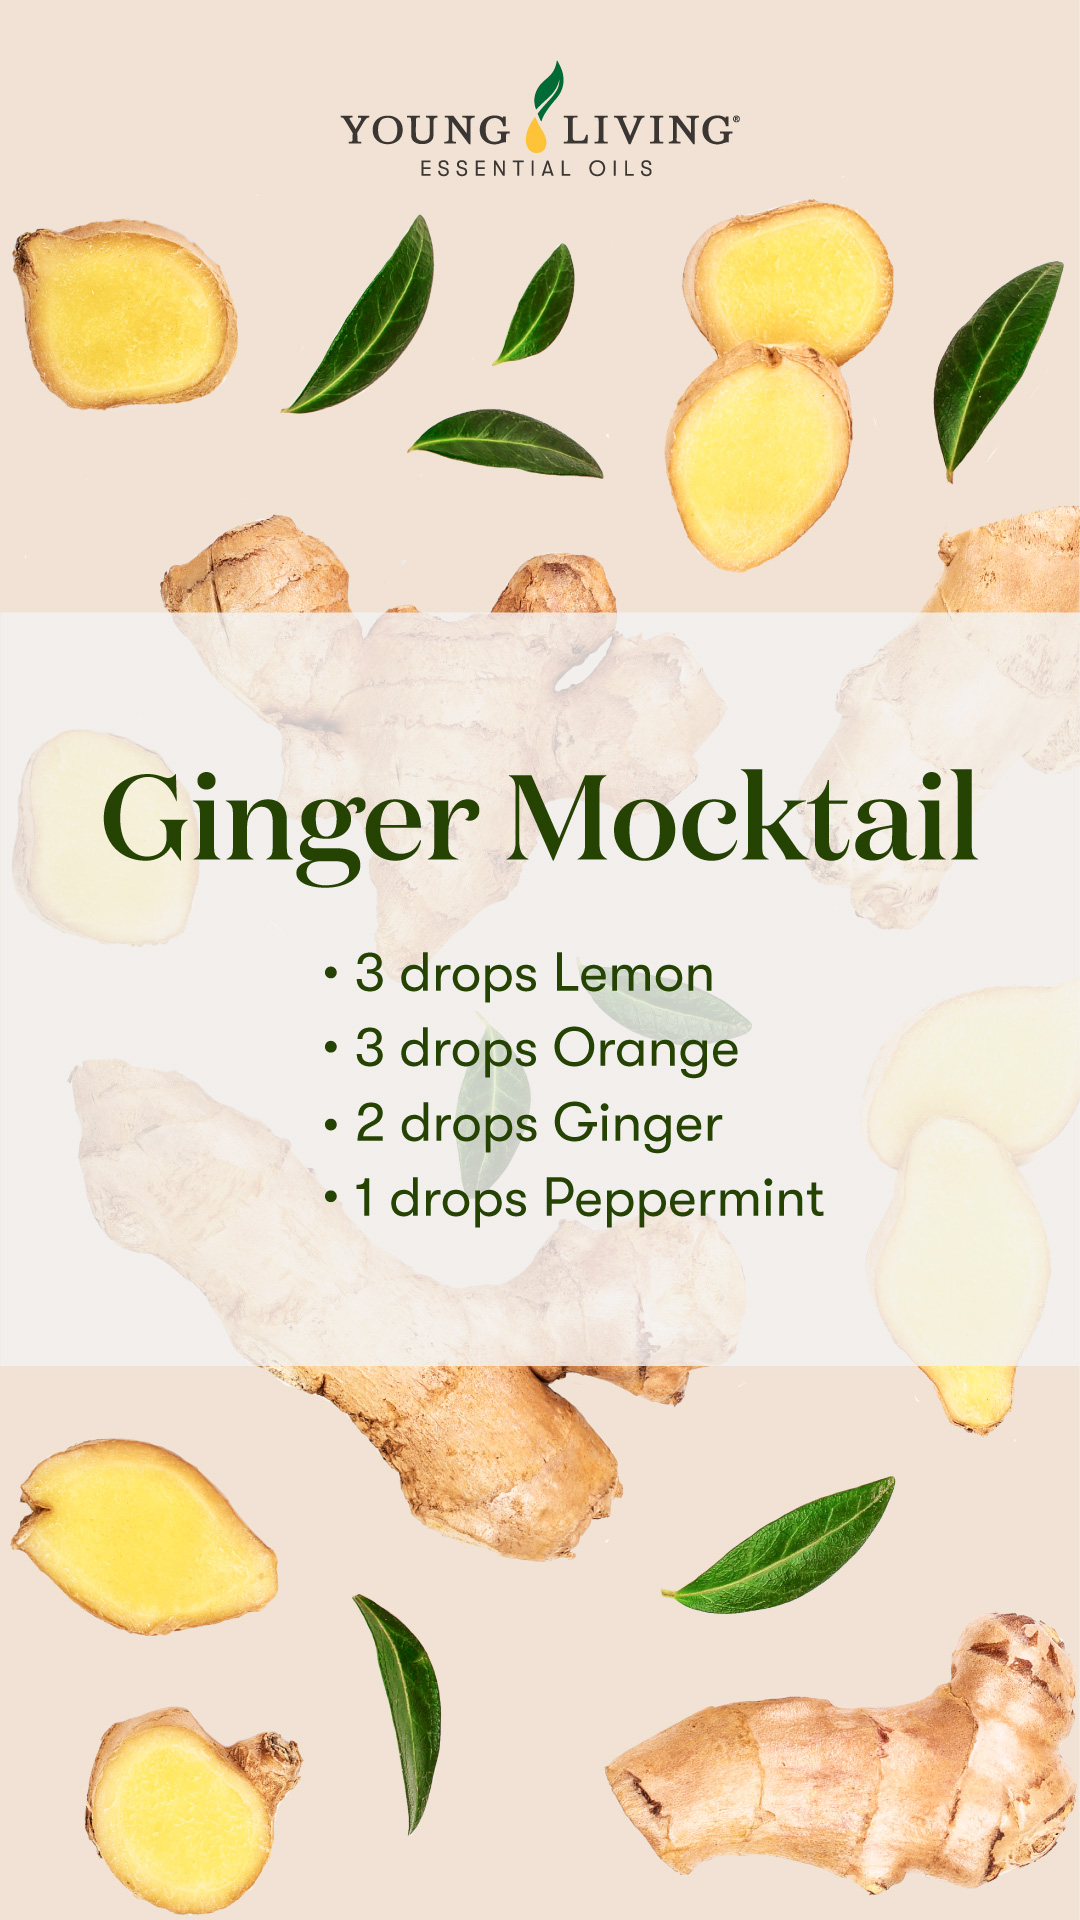 Ginger Mocktail diffuser blend 